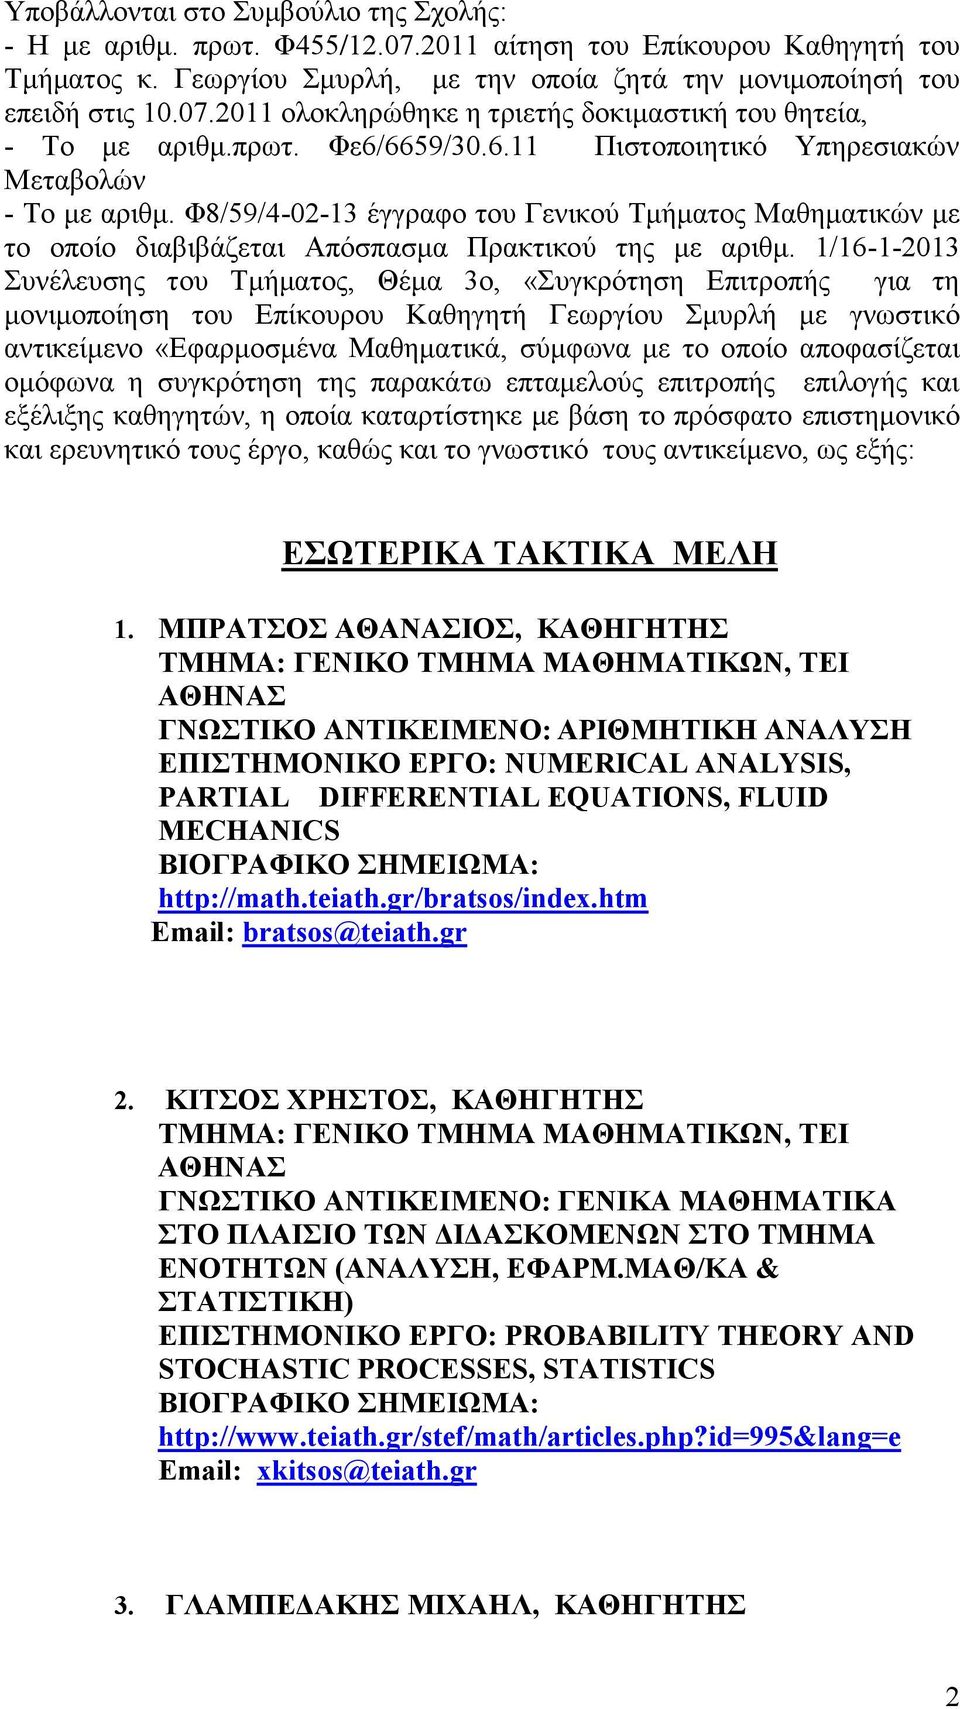 1/16-1-2013 Συνέλευσης του Τμήματος, Θέμα 3ο, «Συγκρότηση Επιτροπής για τη μονιμοποίηση του Επίκουρου Καθηγητή Γεωργίου Σμυρλή με γνωστικό αντικείμενο «Εφαρμοσμένα Μαθηματικά, σύμφωνα με το οποίο